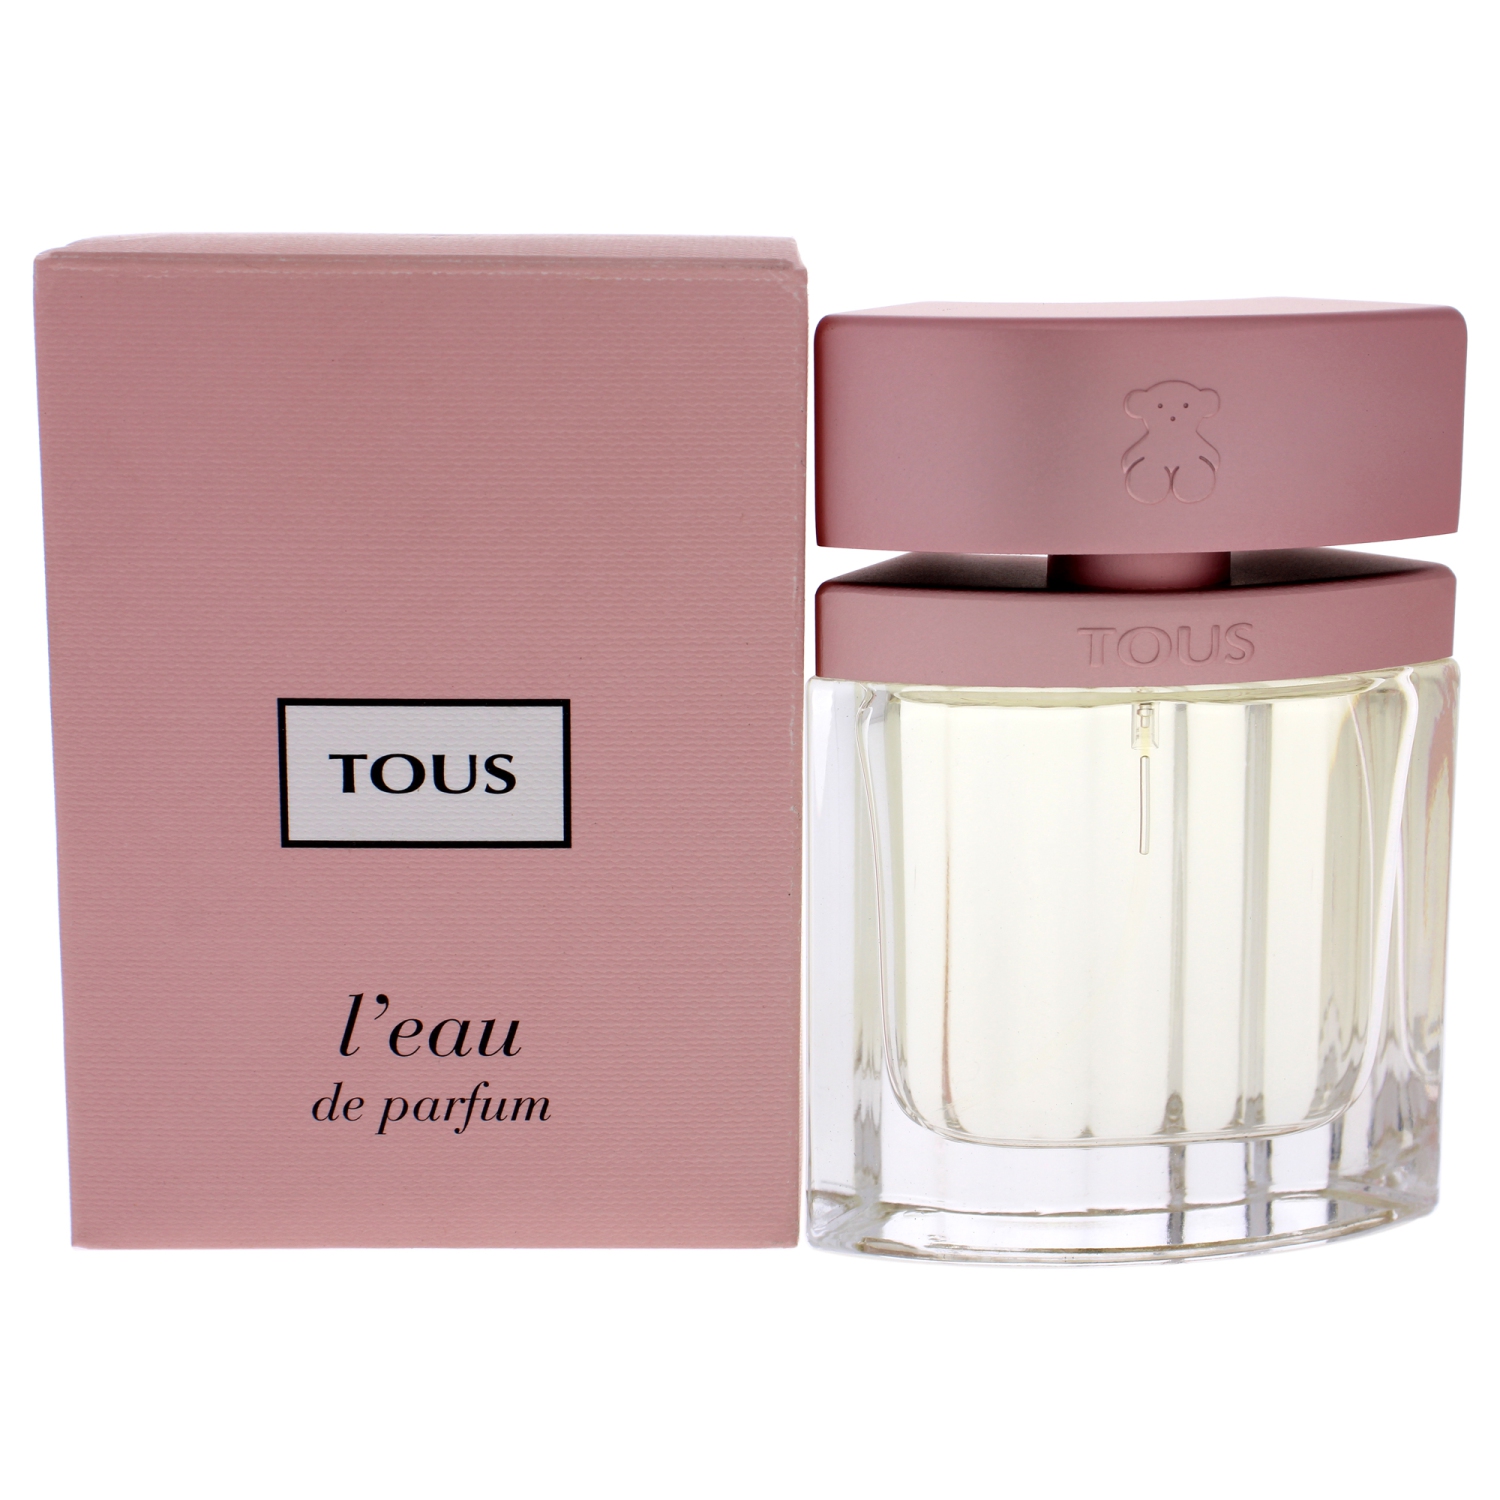 Tous L'eau By Tous Eau De Parfum Spray 1 Oz